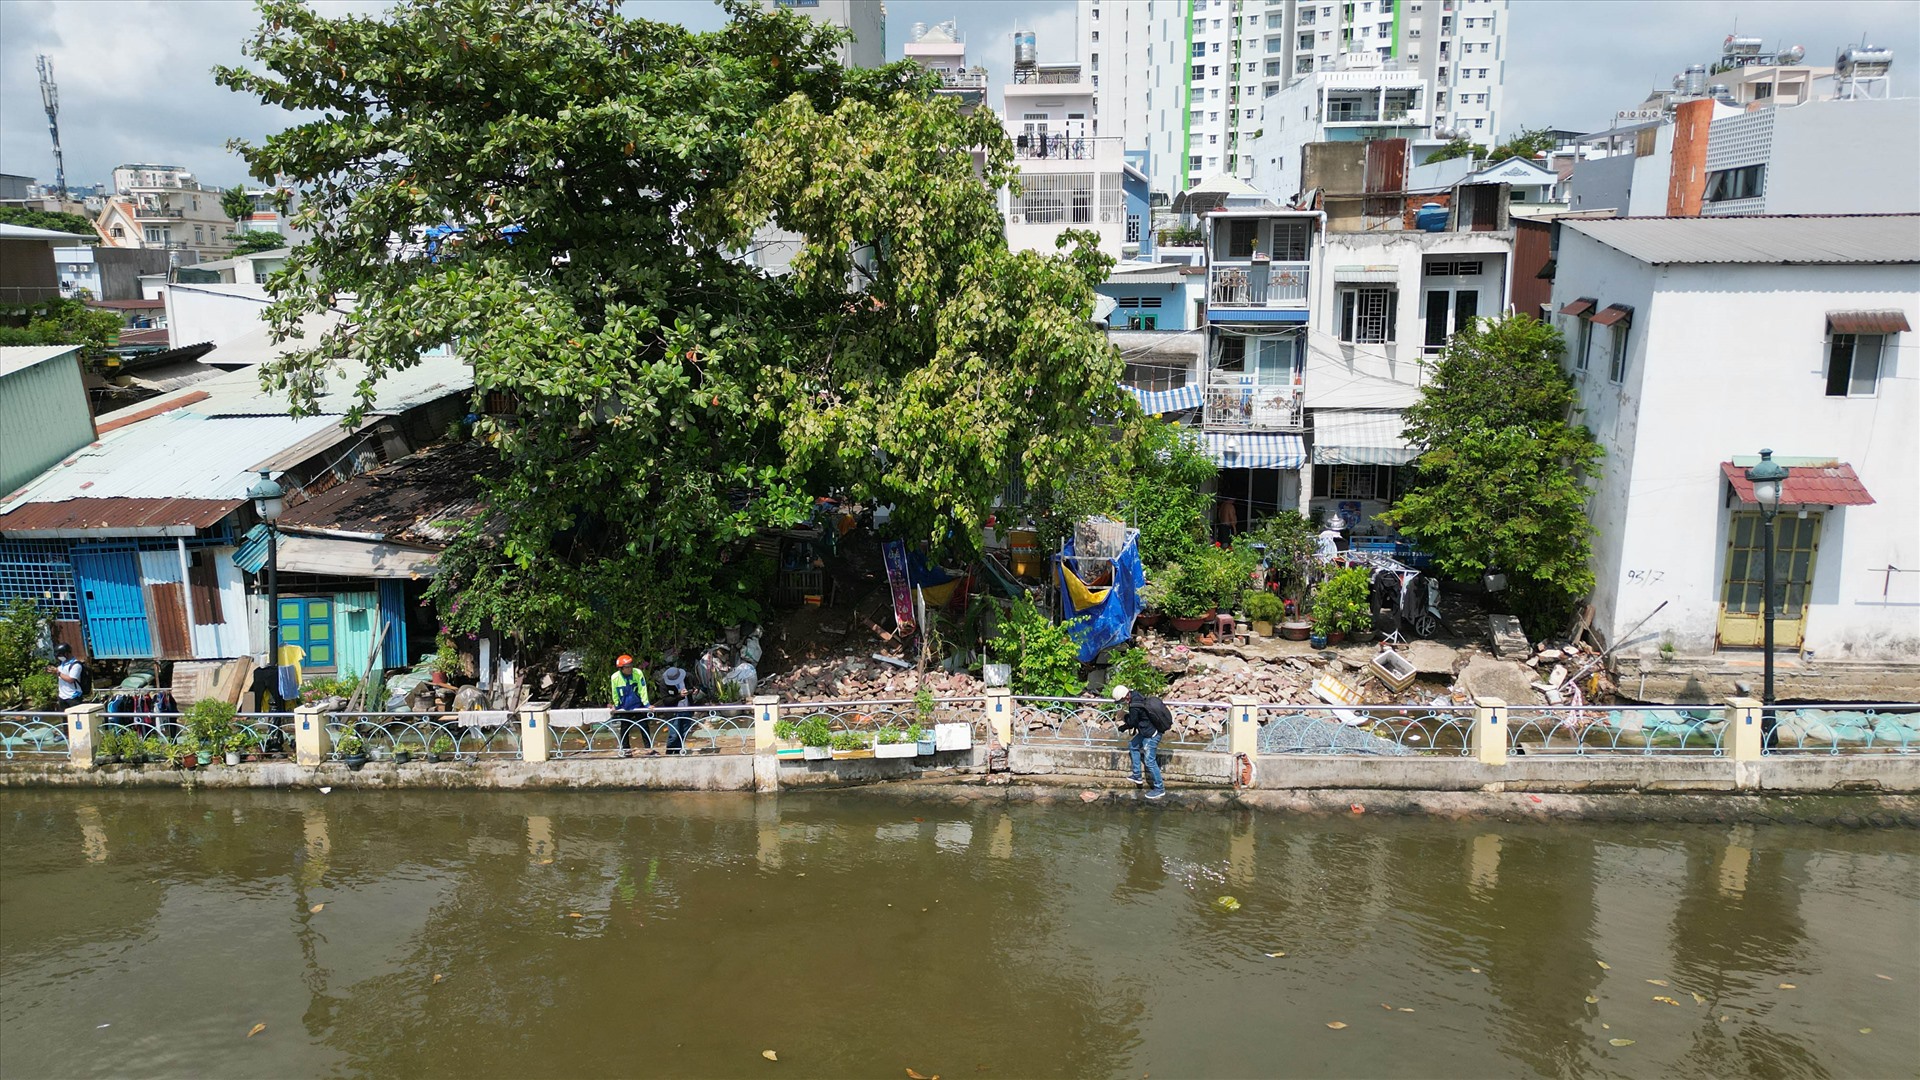 Hơn một tuần trước, 120 m bờ phải kênh Thanh Đa, cách cầu Kinh khoảng 50 m bị sạt lở, làm ảnh hưởng 13 hộ dân sống tại đây. 